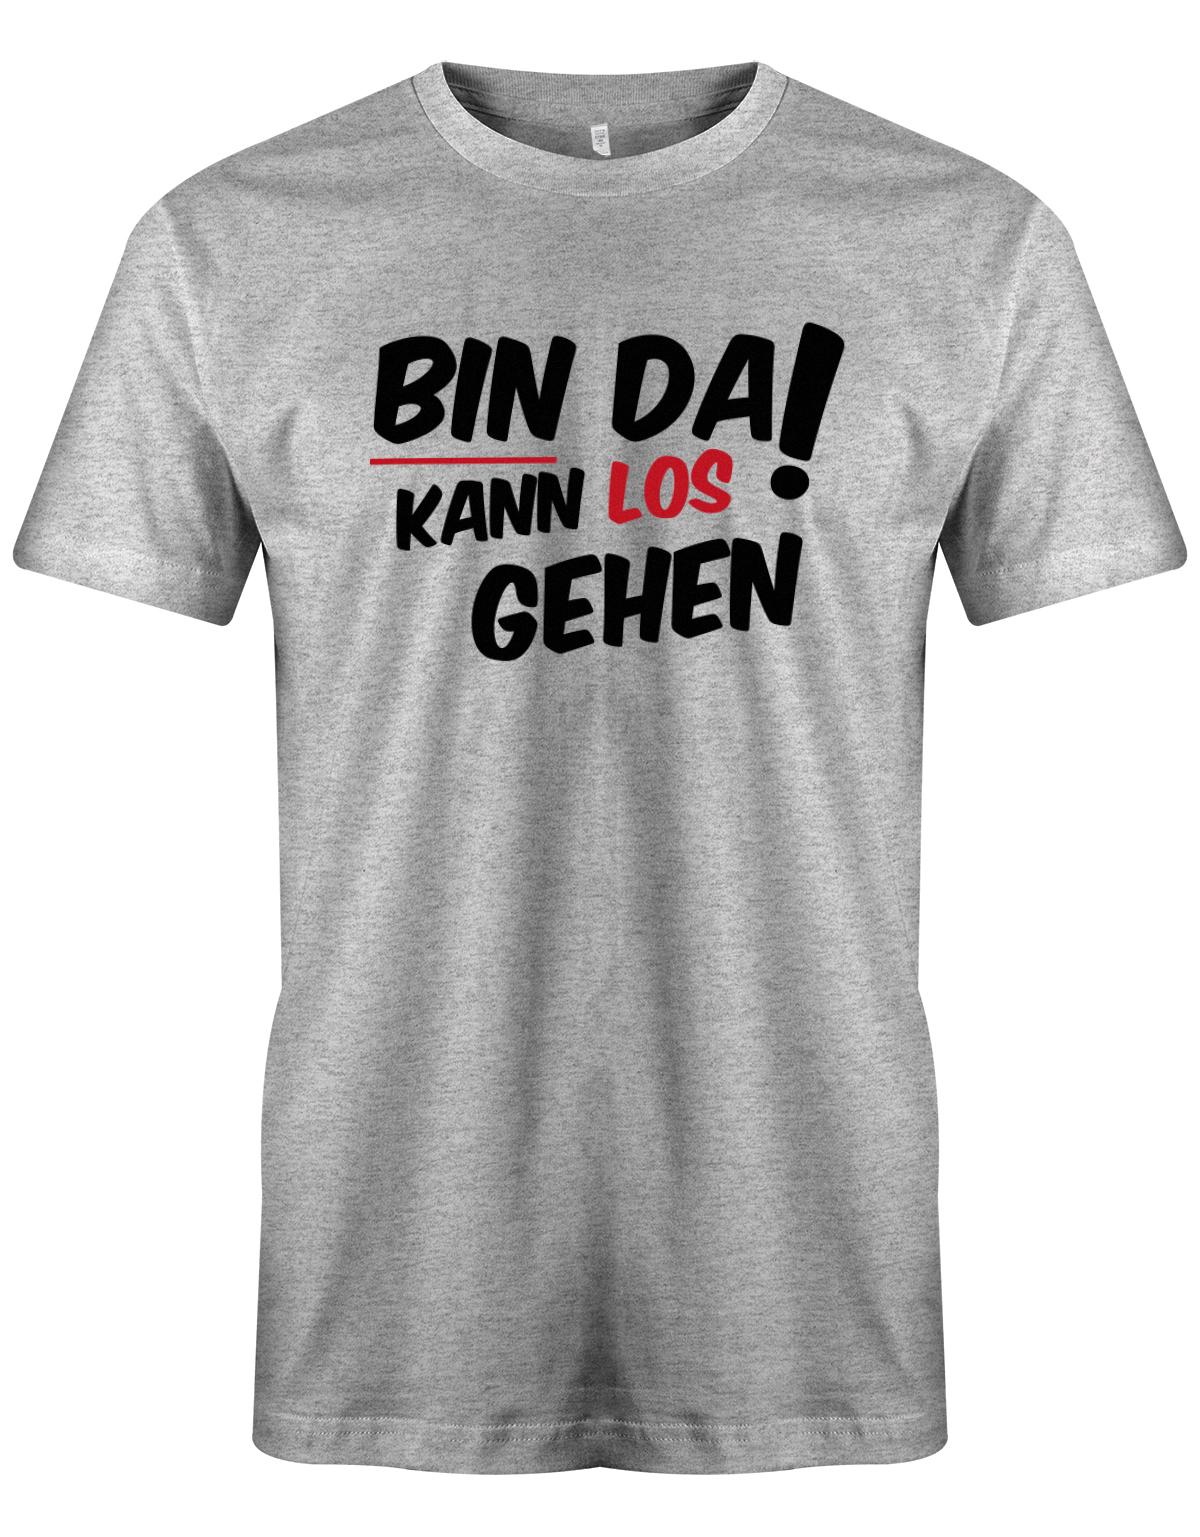 Bin da kann los gehen - Fun Lustige Sprüche - Herren T-Shirt myShirtStore Grau